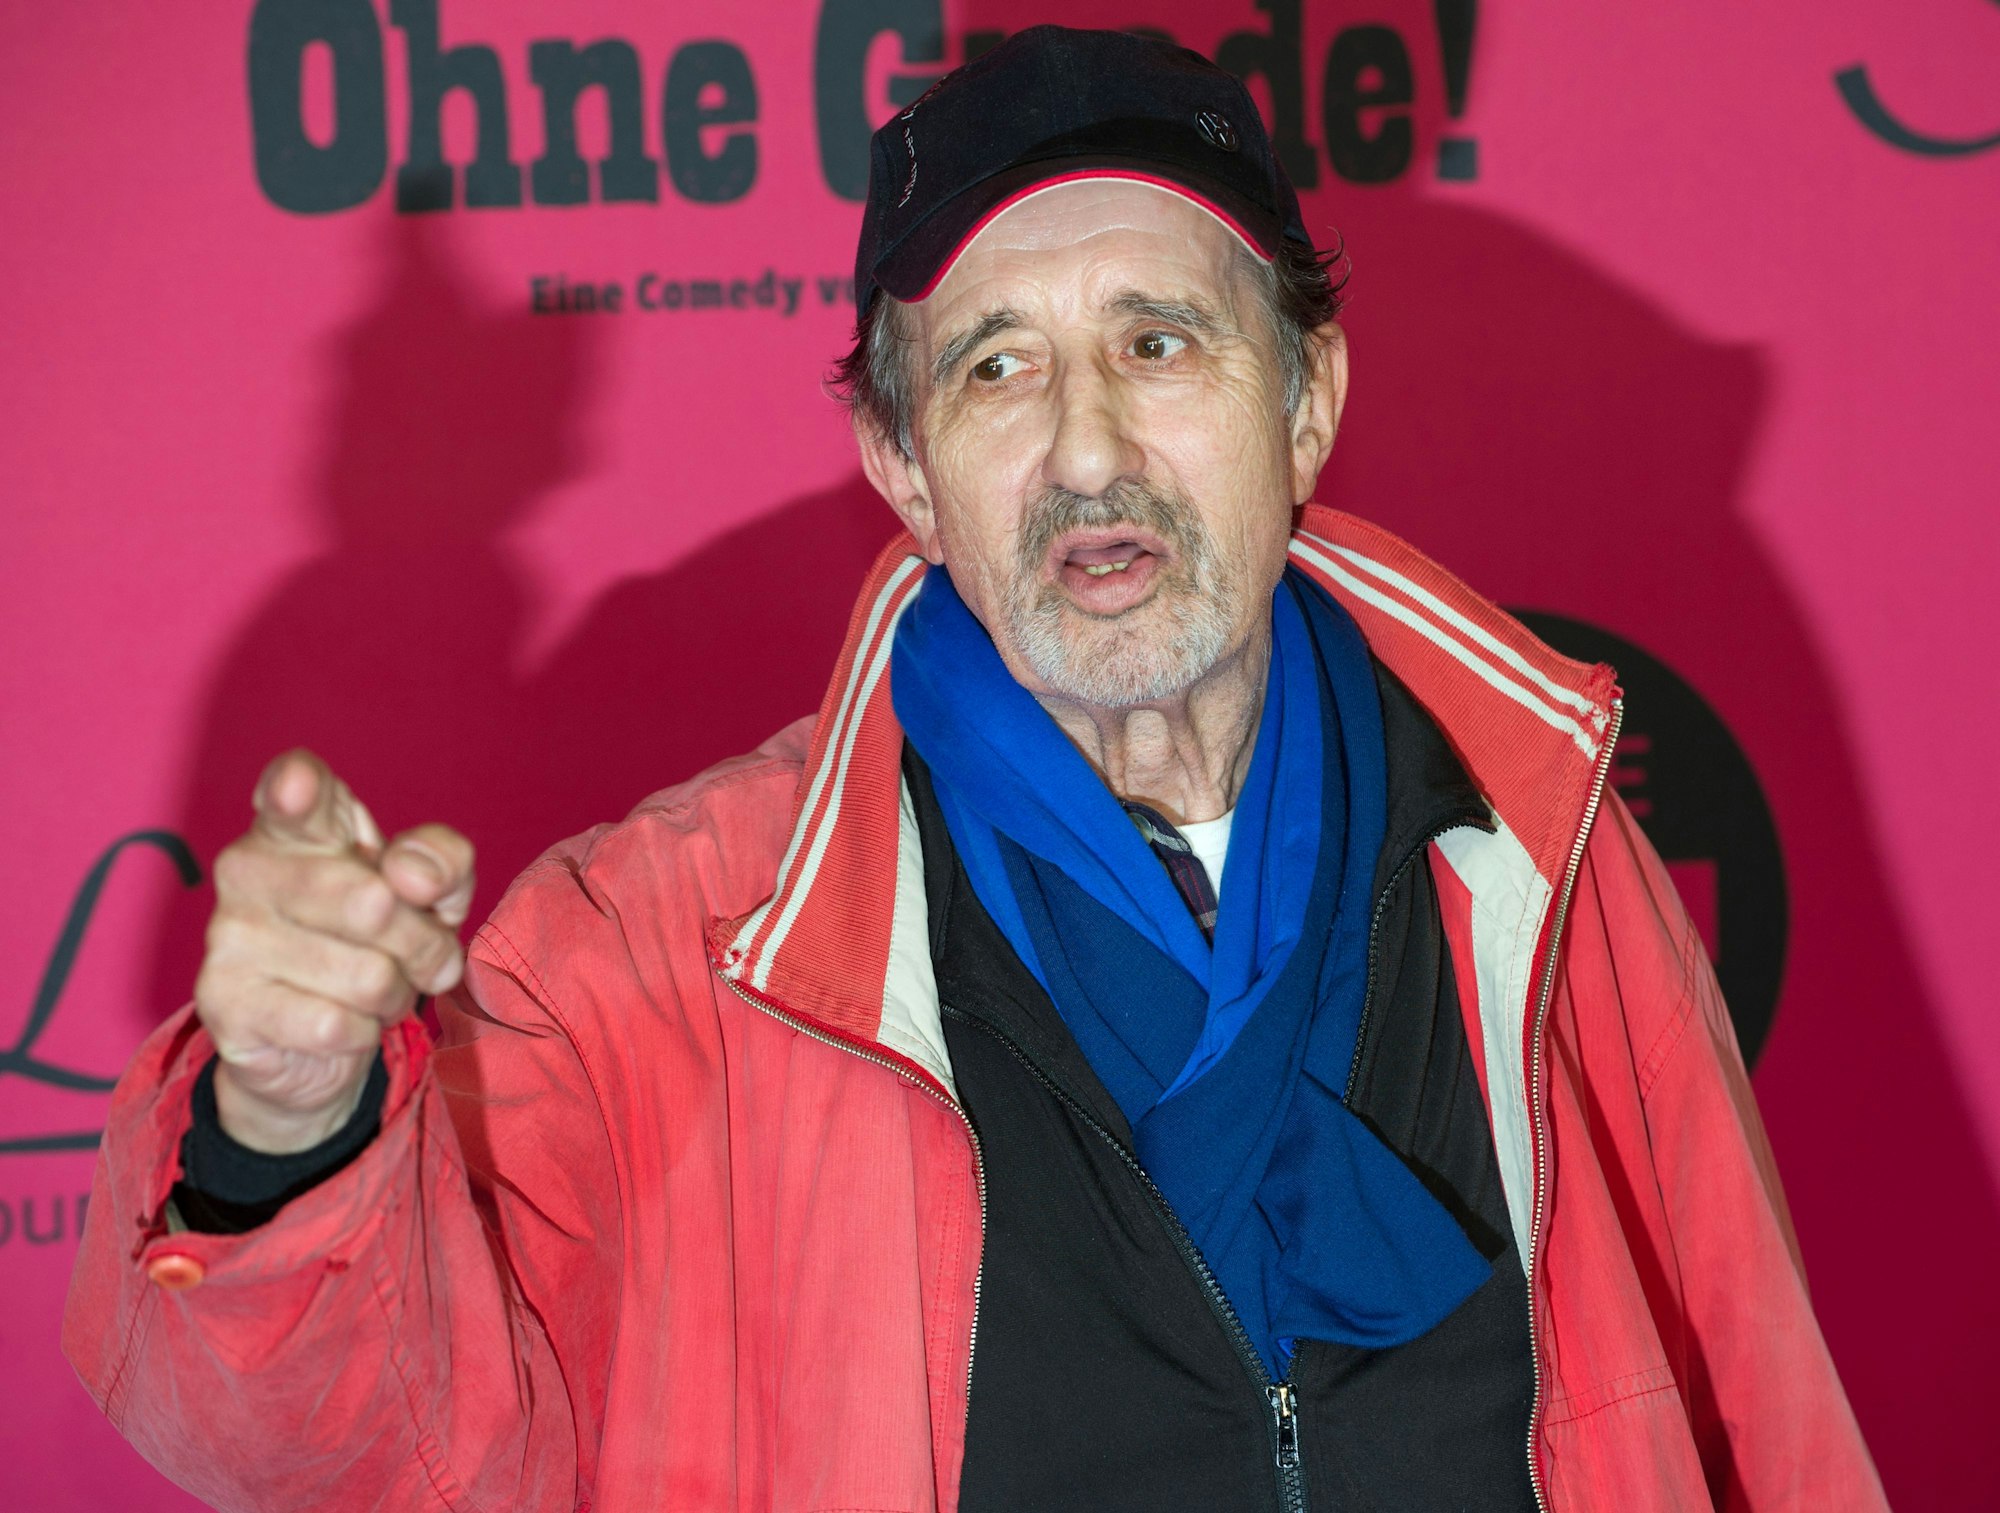 Der Schauspieler Rolf Zacher posiert am 23.04.2013 auf dem roten Teppich der Filmpremiere "Ohne Gnade" in Berlin.